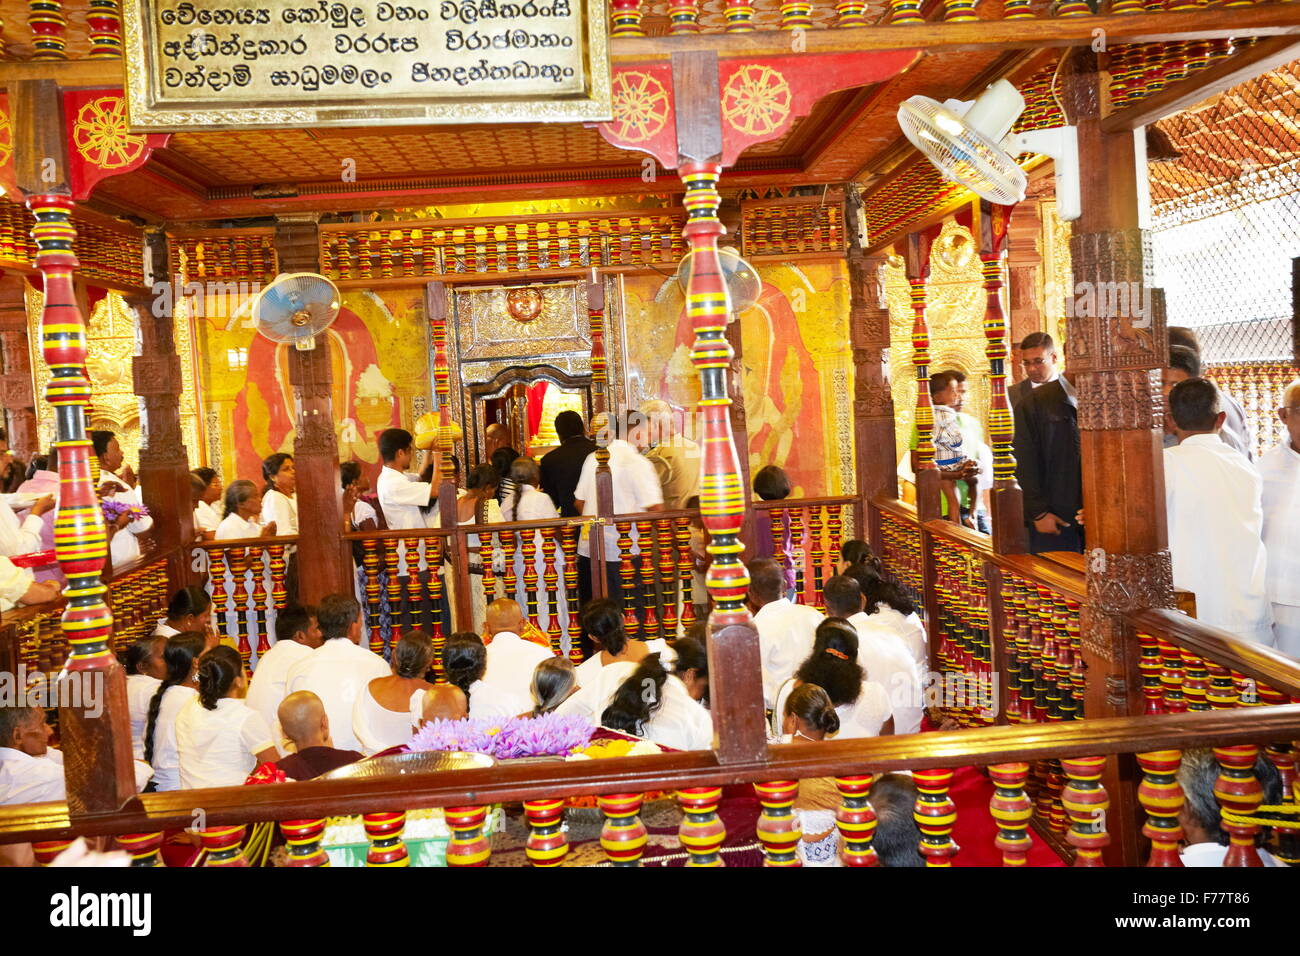 Sri Lanka, Kandy - peregrinos en el interior del Templo del Diente, Sri Dalada Maligawa, Sitio del Patrimonio Mundial de la UNESCO, el santuario budista Foto de stock